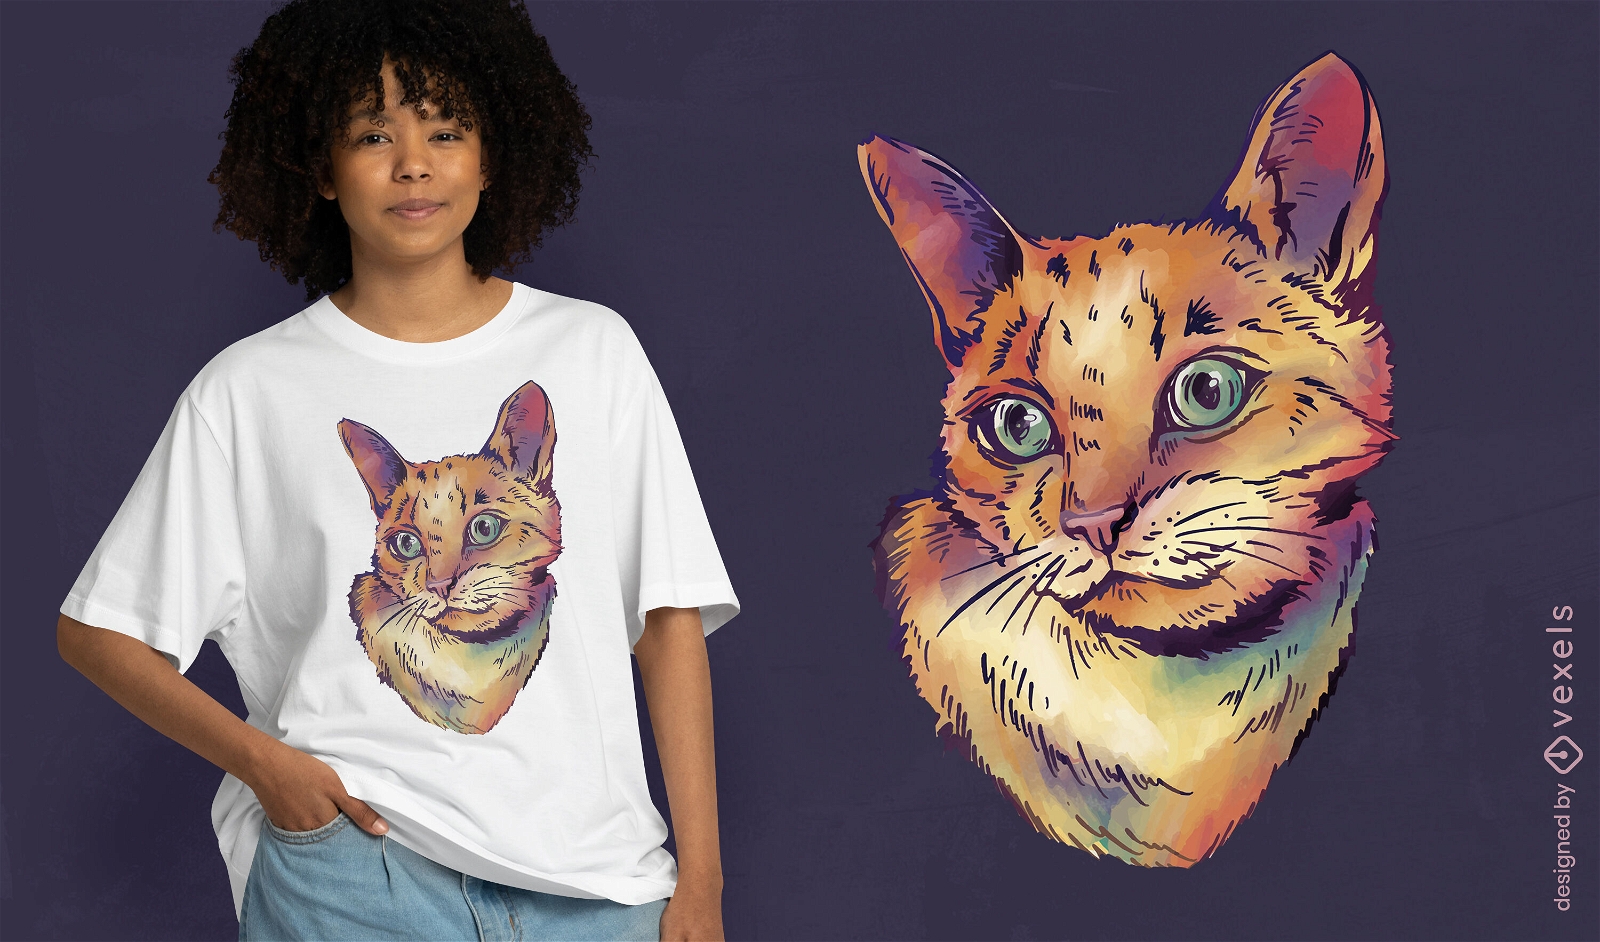 Dise?o de camiseta de acuarela de gato realista.